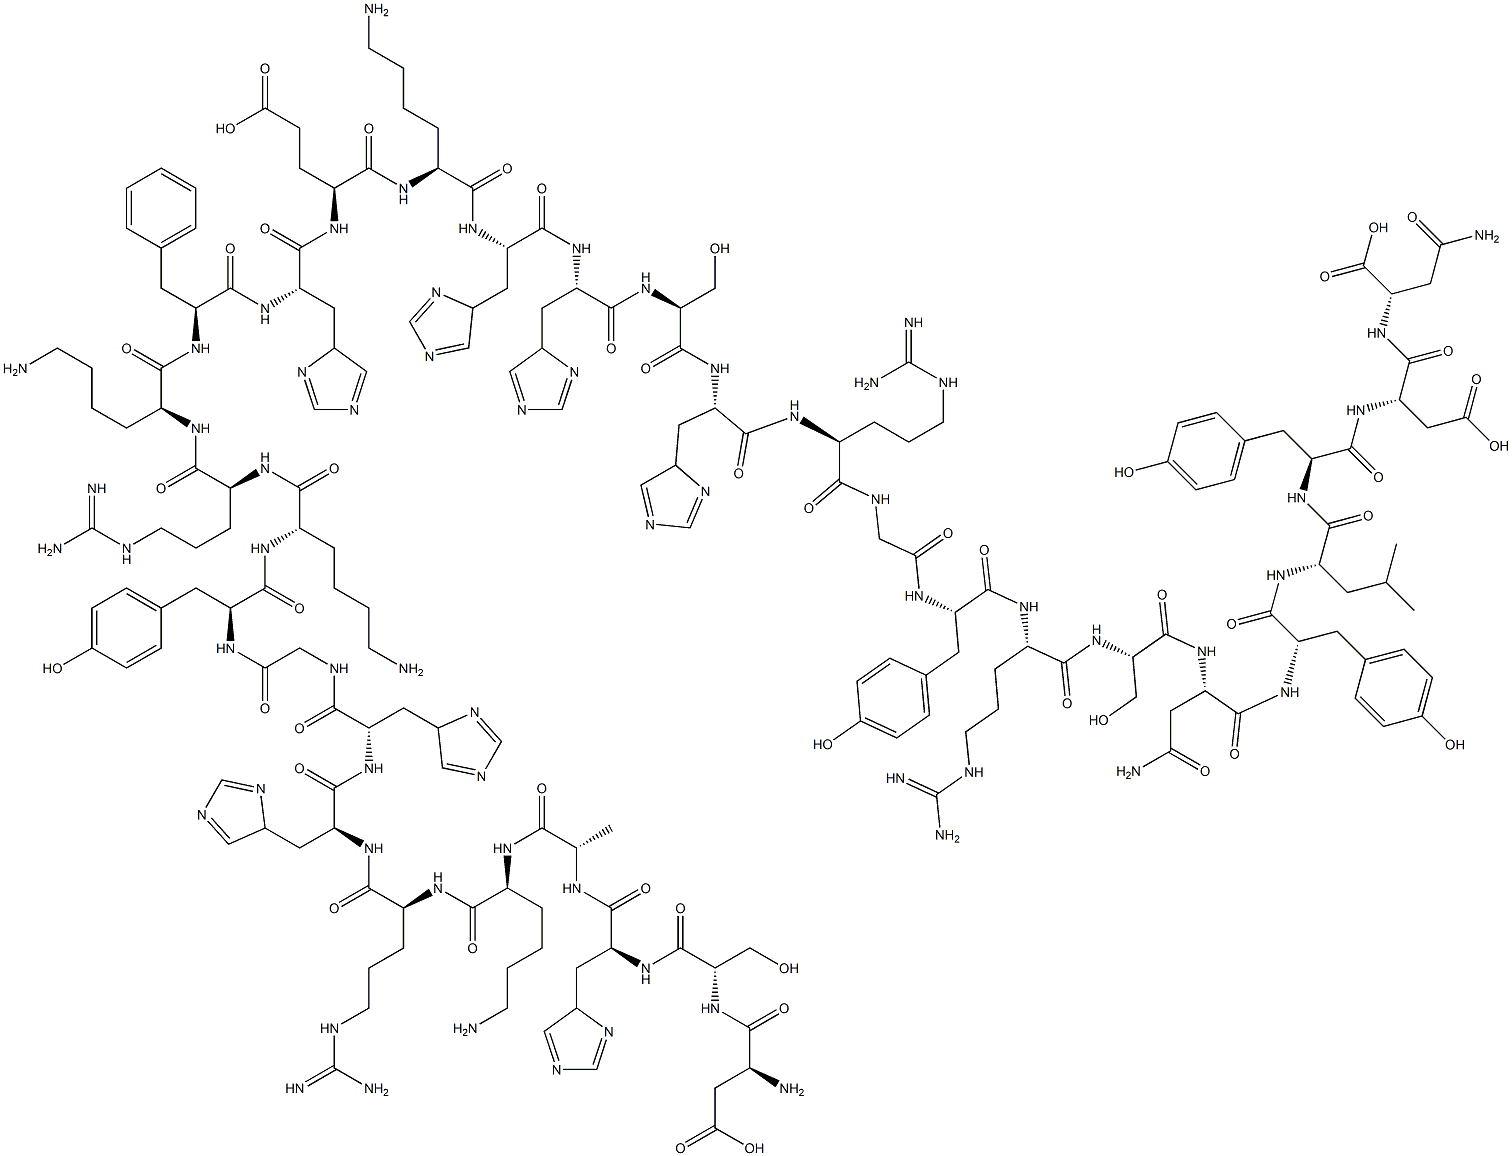 L-Asparagine, L-a-aspartyl-L-seryl-L-histidyl-L-alanyl-L-lysyl-L-arginyl-L-histidyl-L-histidylglycyl-L-tyrosyl-L-lysyl-L-arginyl-L-lysyl-L-phenylalanyl-L-histidyl-L-a-glutamyl-L-lysyl-L-histidyl-L-histidyl-L-seryl-L-histidyl-L-arginylglycyl-L-tyrosyl-L-arginyl-L-seryl-L-asparaginyl-L-tyrosyl-L-leucyl-L-tyrosyl-L-a-aspartyl- Struktur